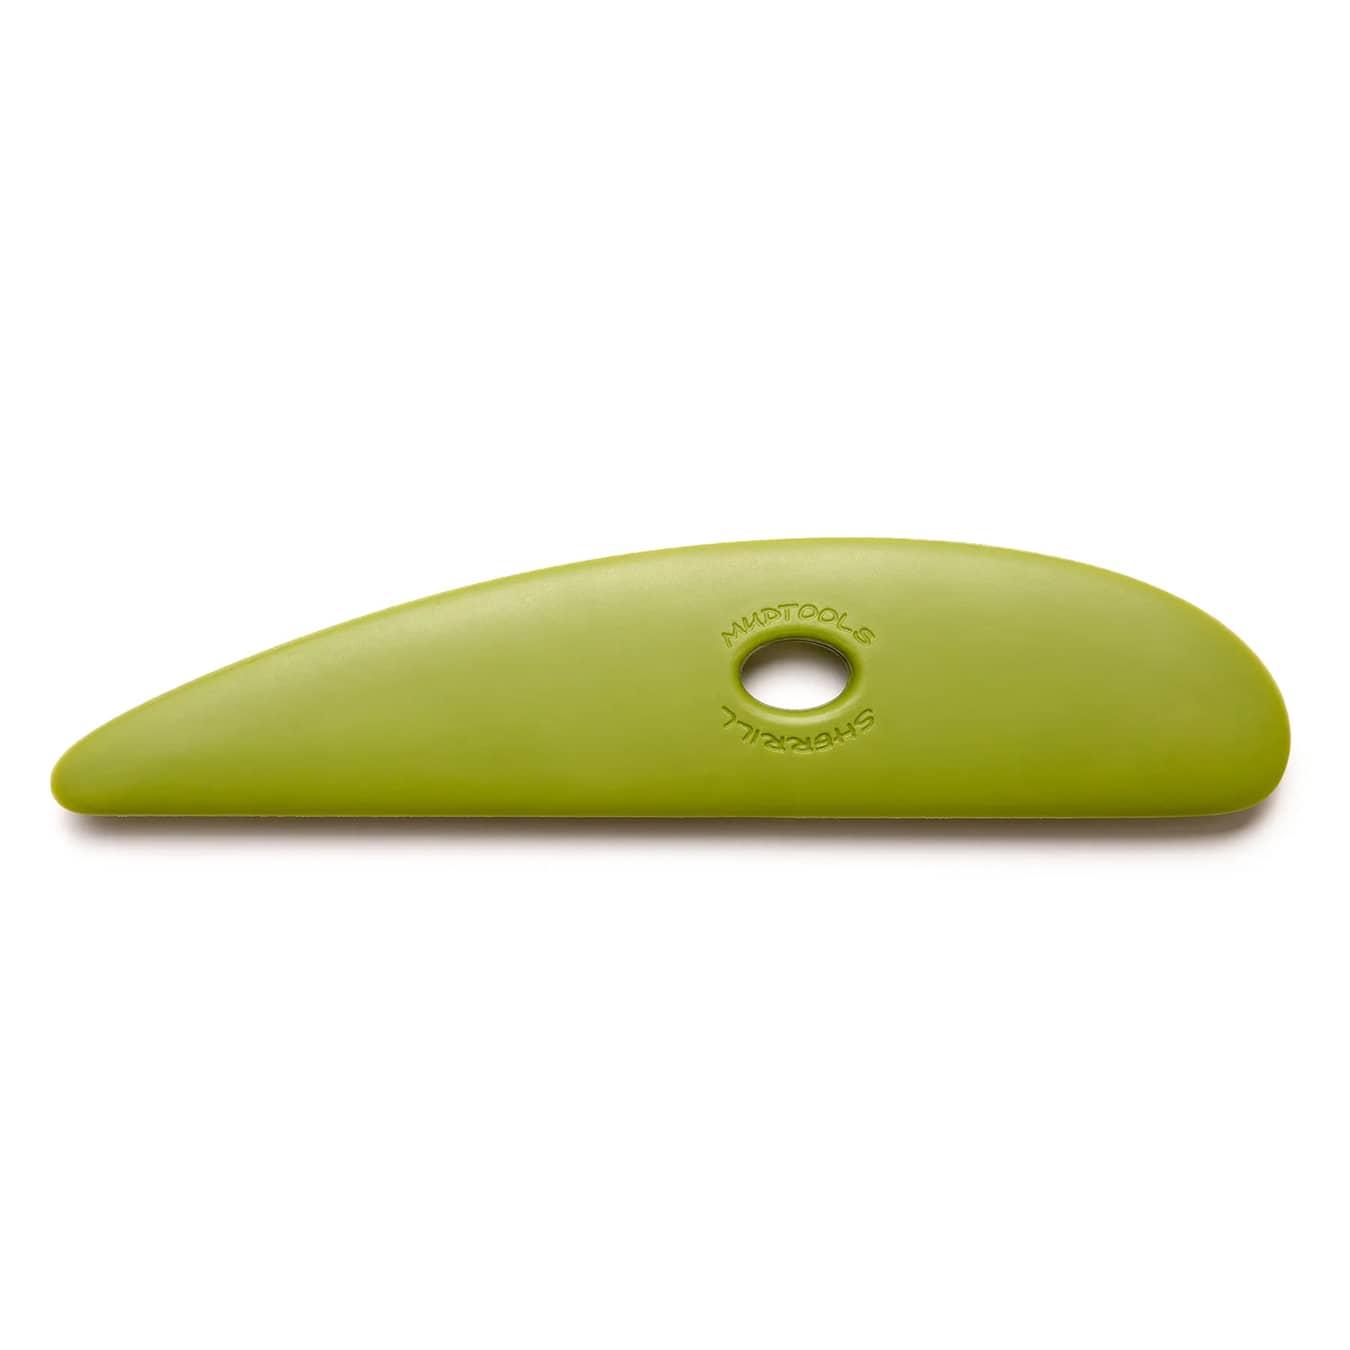 Mudtools Small Green Platter Kidney – Green (Medium)